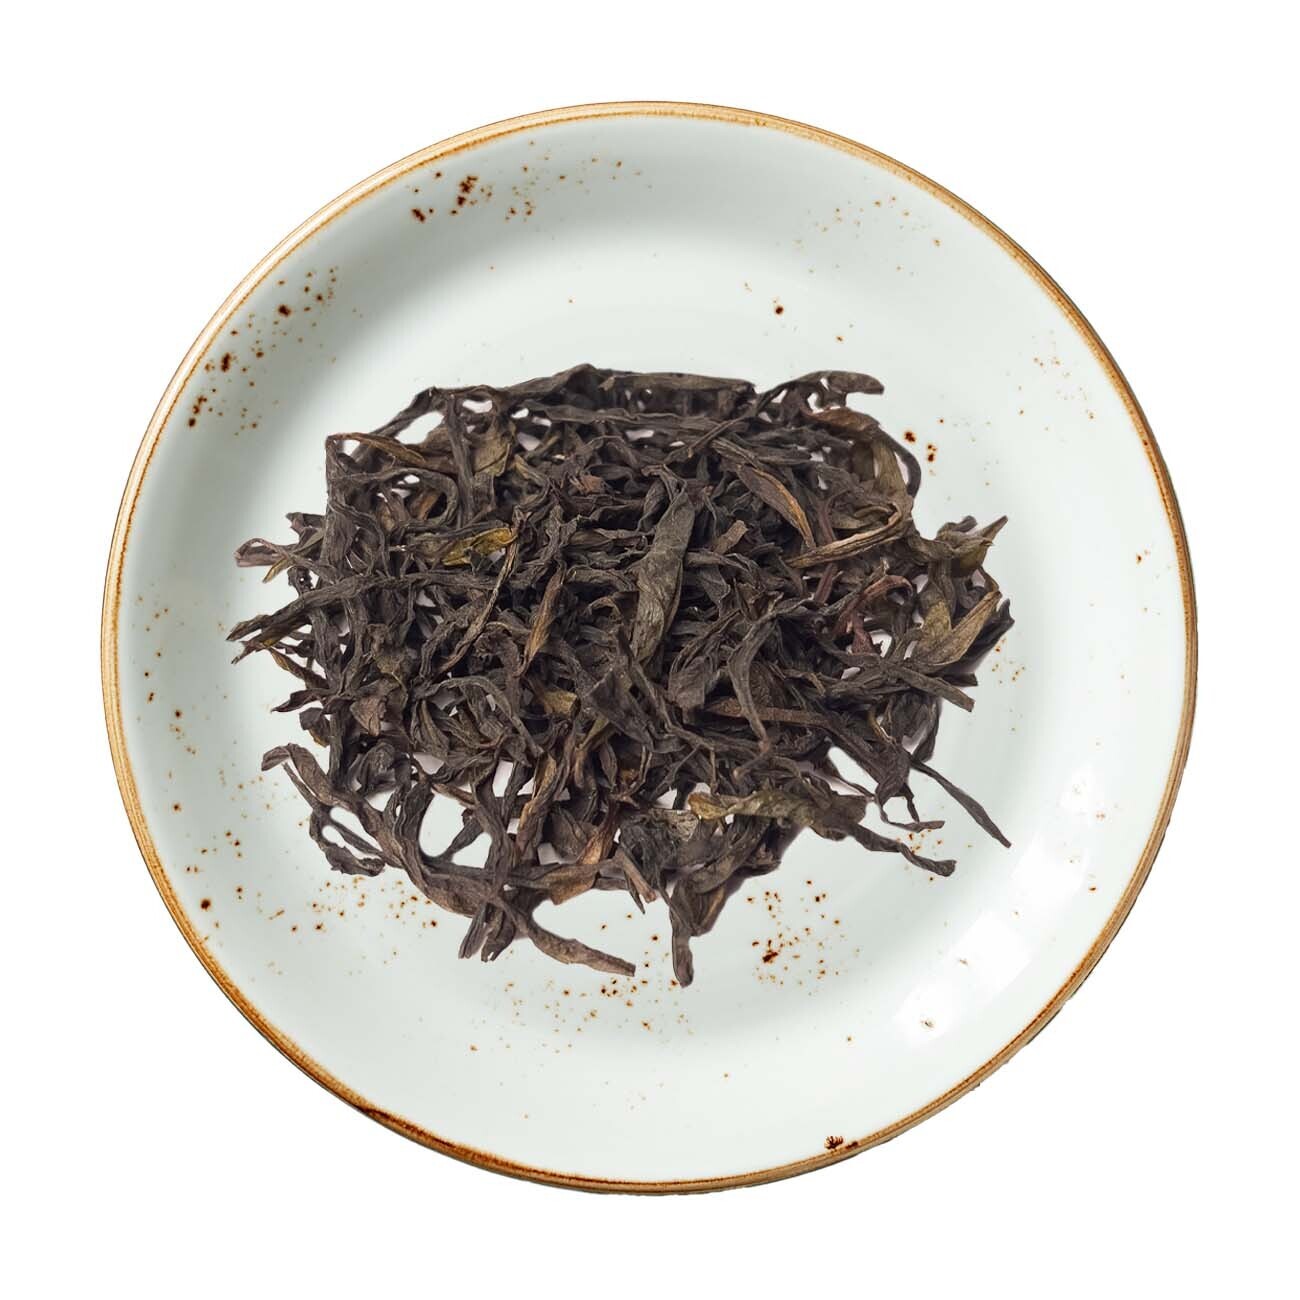 Nan Jiang Xiang Oolong Tea, Size: One Ounce (28 grams)